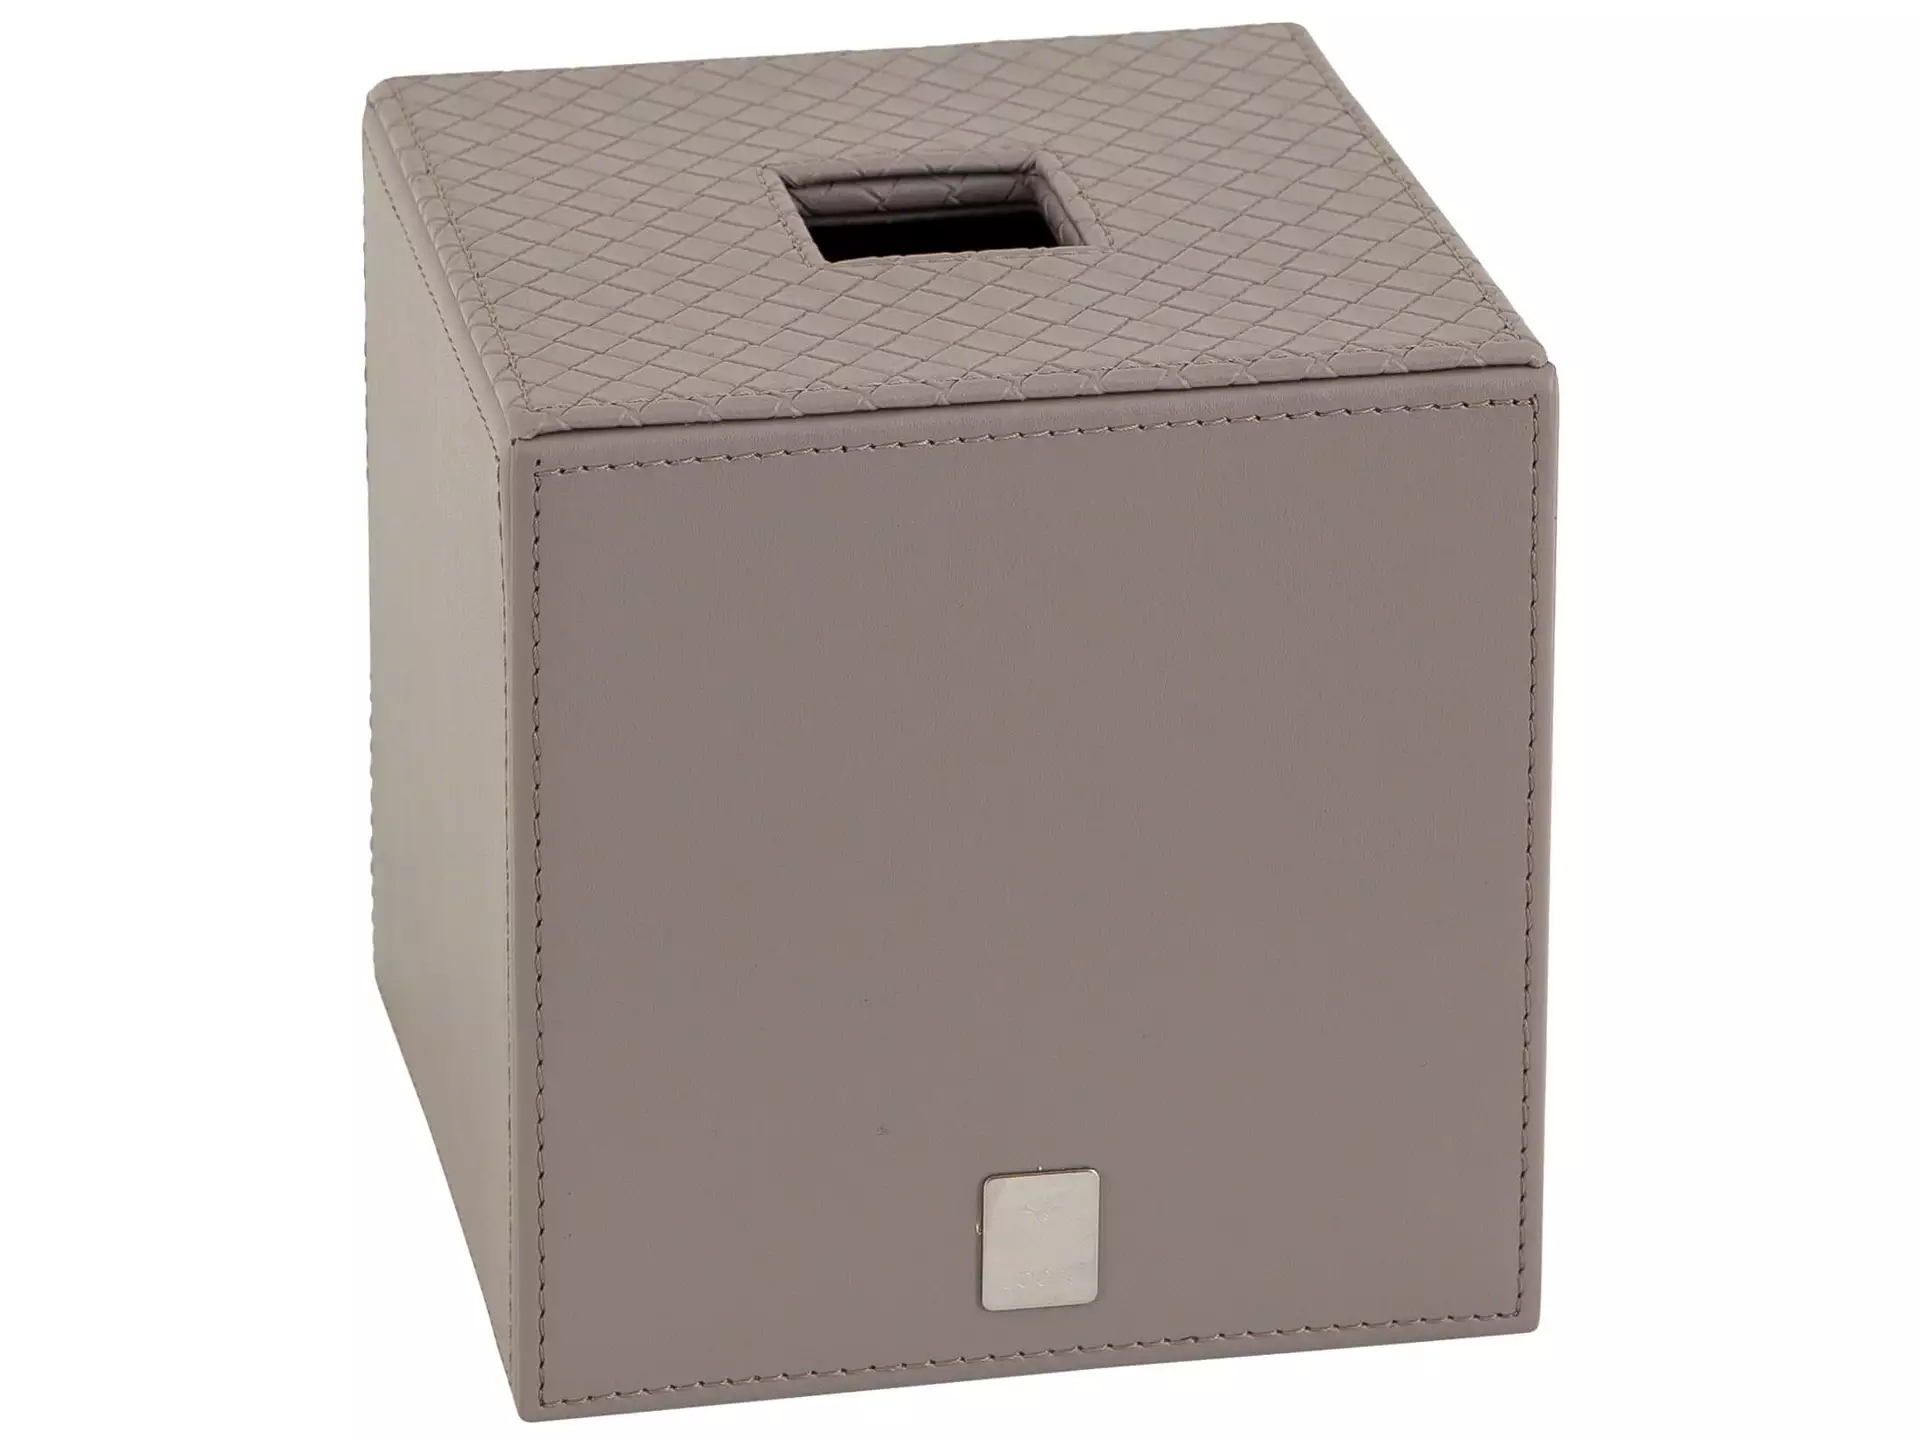 Papiertuch-Box, Grau, Oberseite Geprägtes Flechtmuster, Höhe 13,3 cm